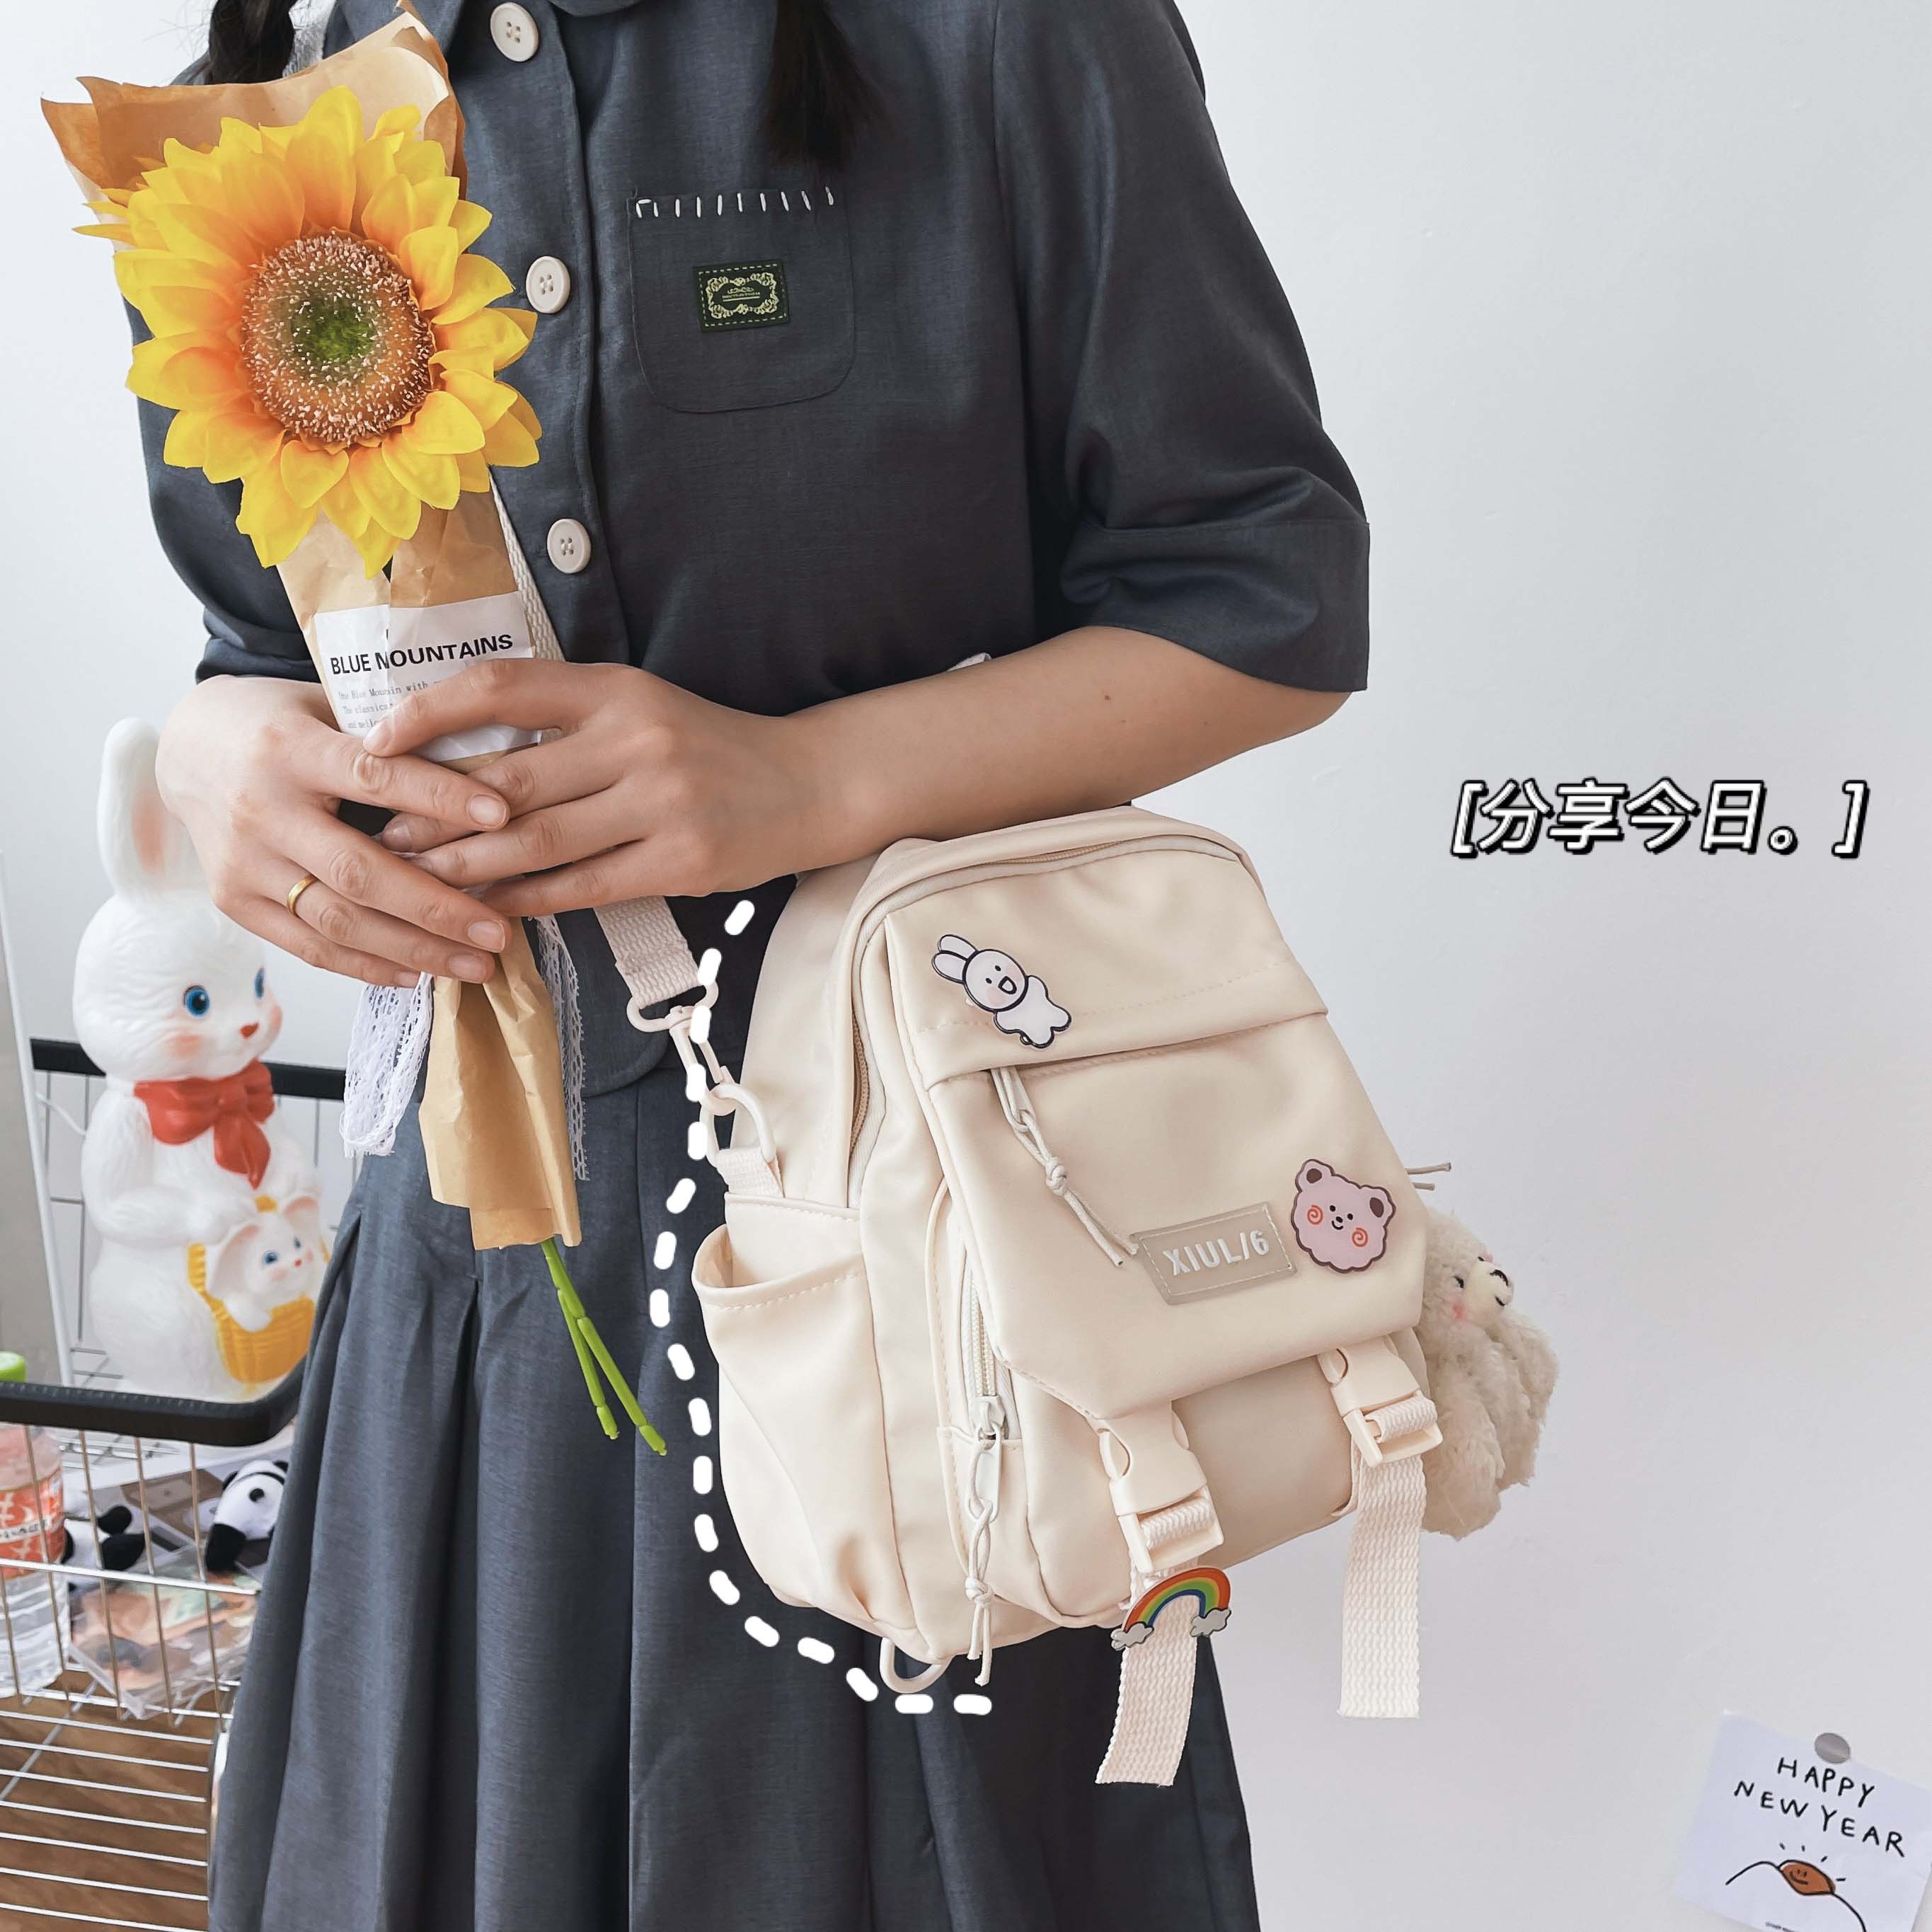 Jsvery Small Backpack Women Cute Multifunctional Dual-use School Bags for Teenage Girls Student Kawaii Mini Travel Backpacks Ruckpack - mihoodie